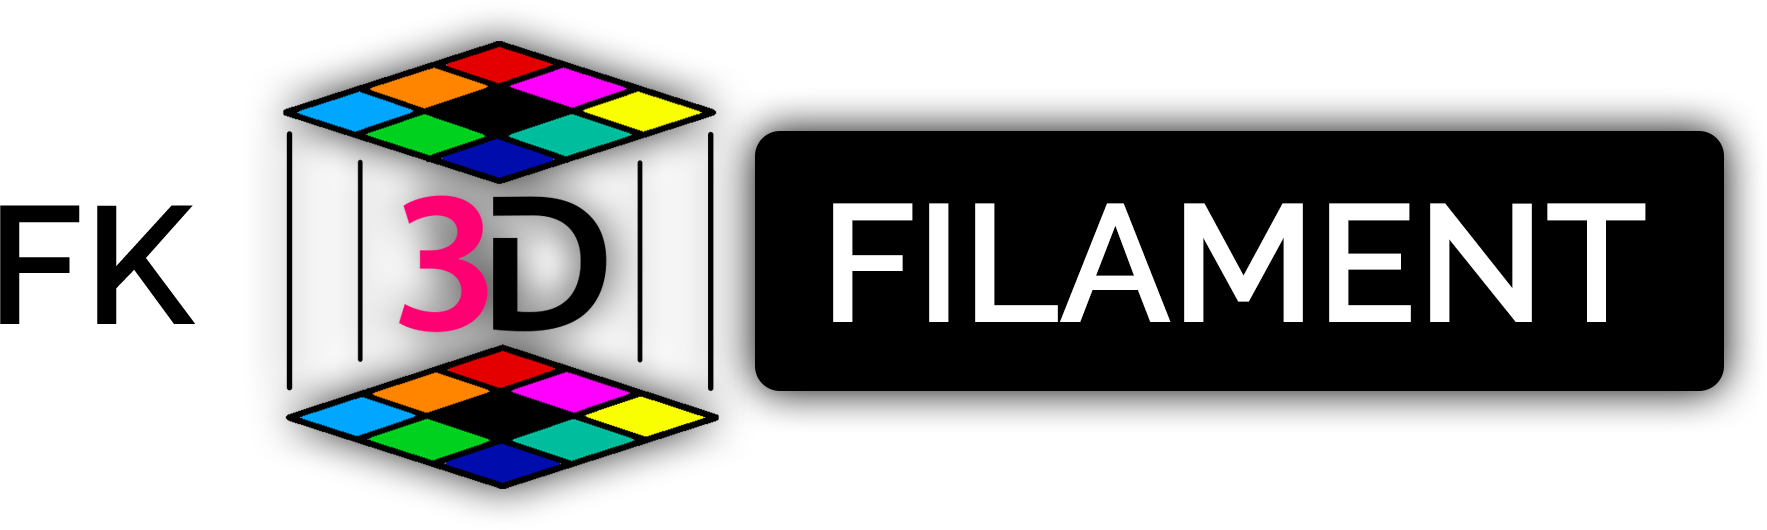 FK Filament